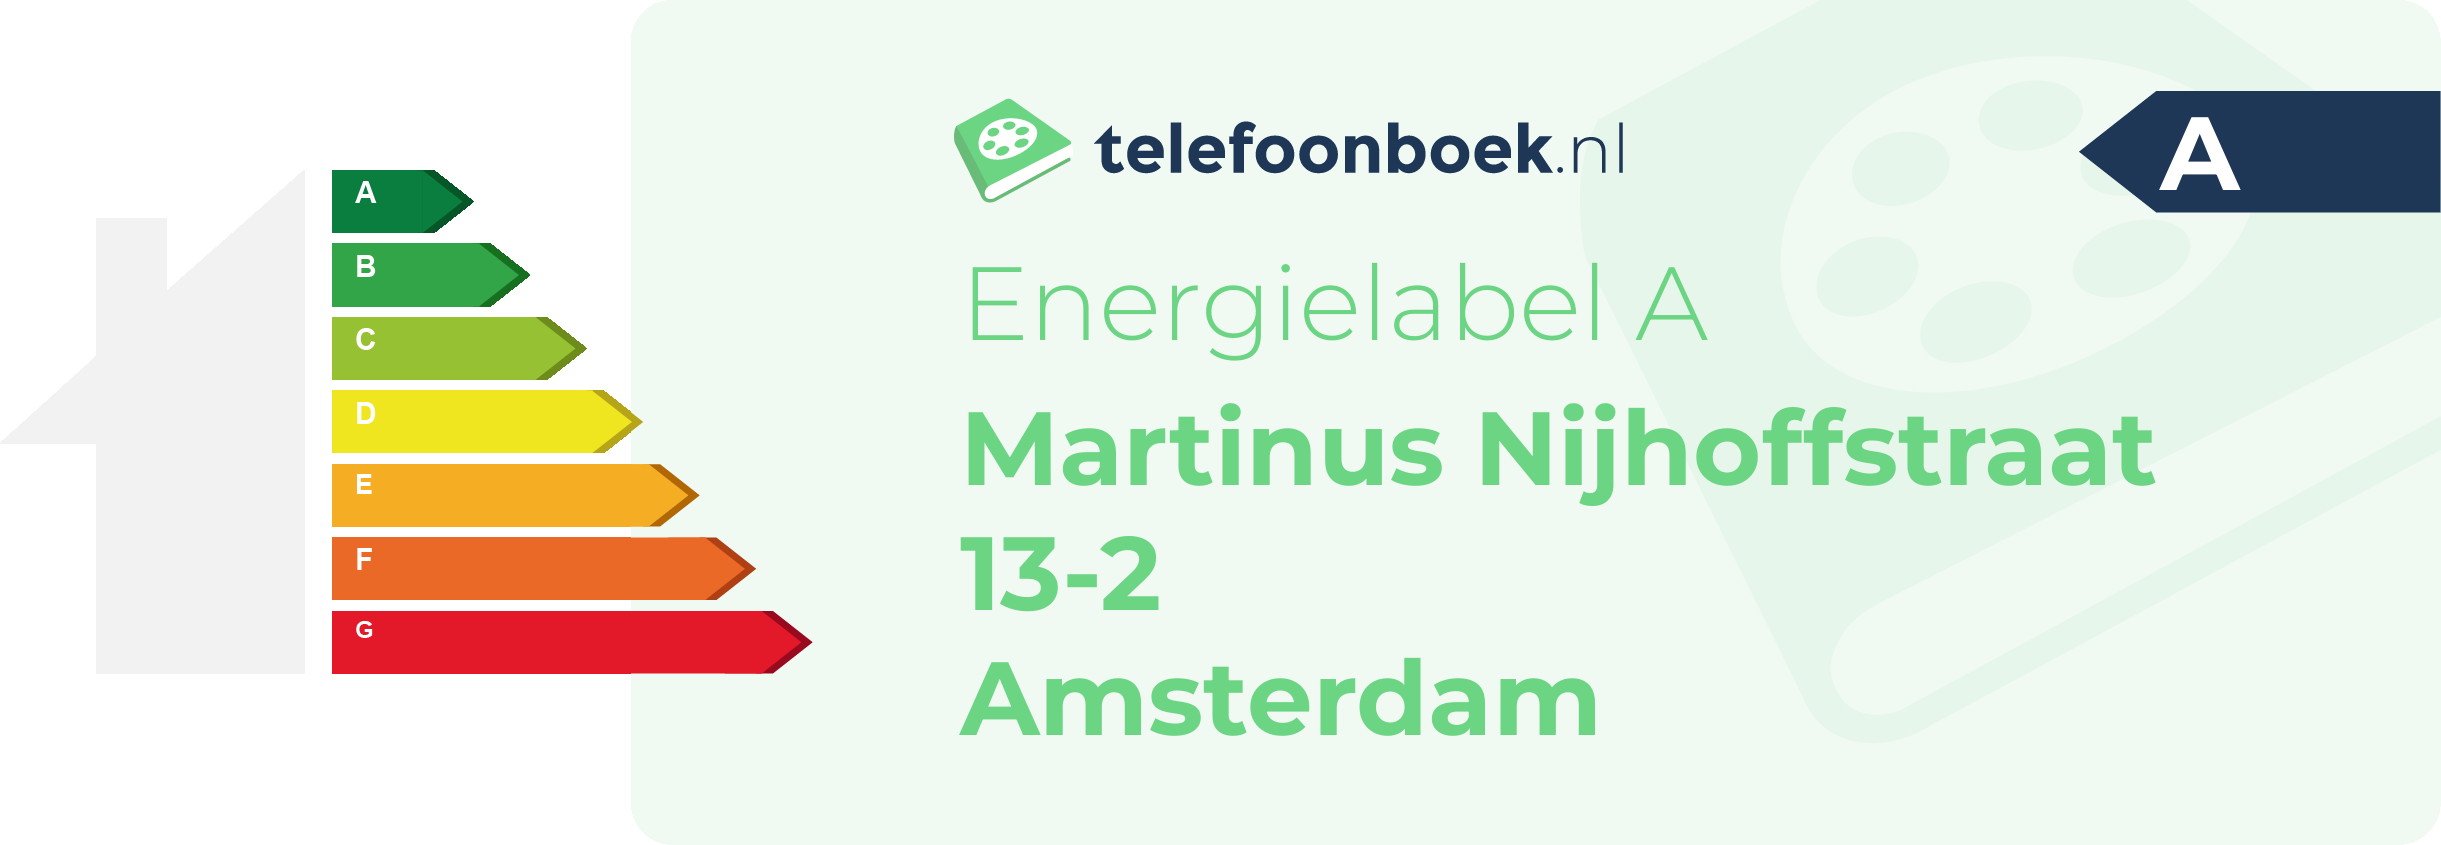 Energielabel Martinus Nijhoffstraat 13-2 Amsterdam